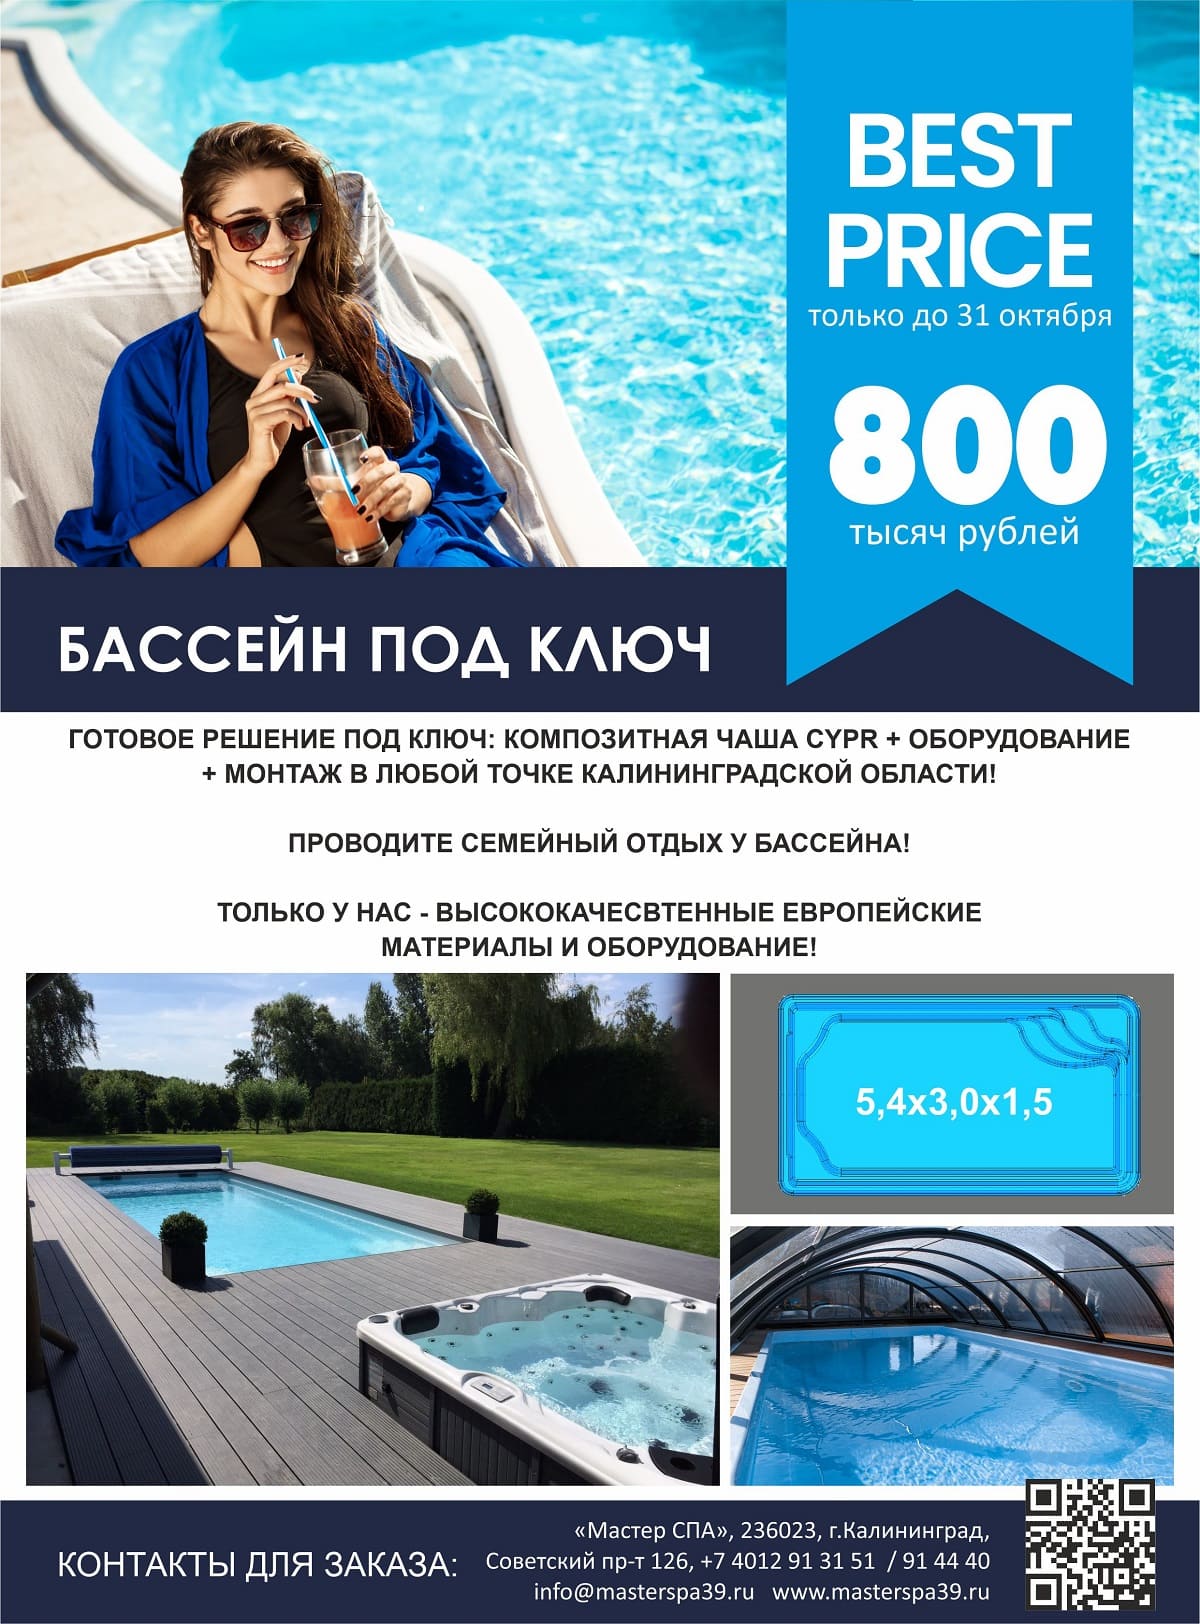 Готовый бассейн в «Мастер СПА» за 800 000 рублей!